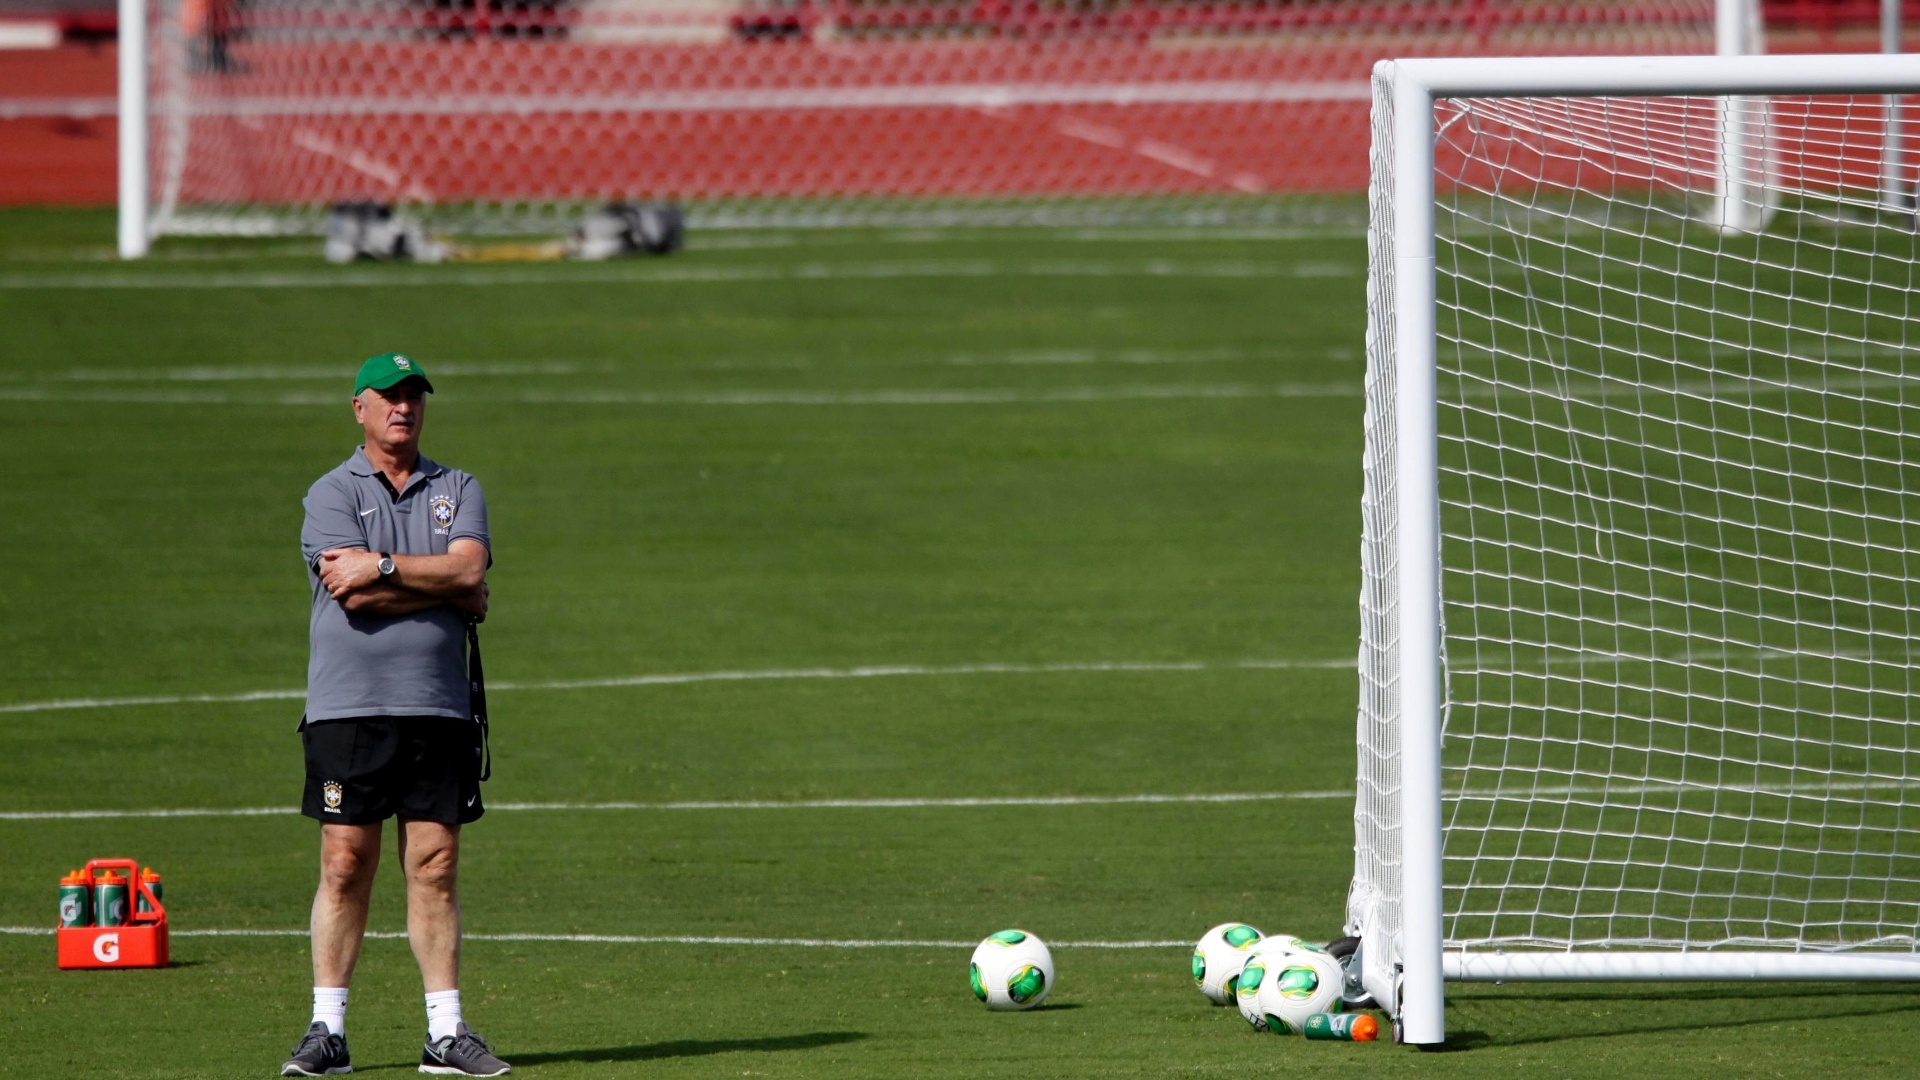 16.jun.2013 - Técnico Luiz Felipe Scolari observa o treinamento da seleção brasileira